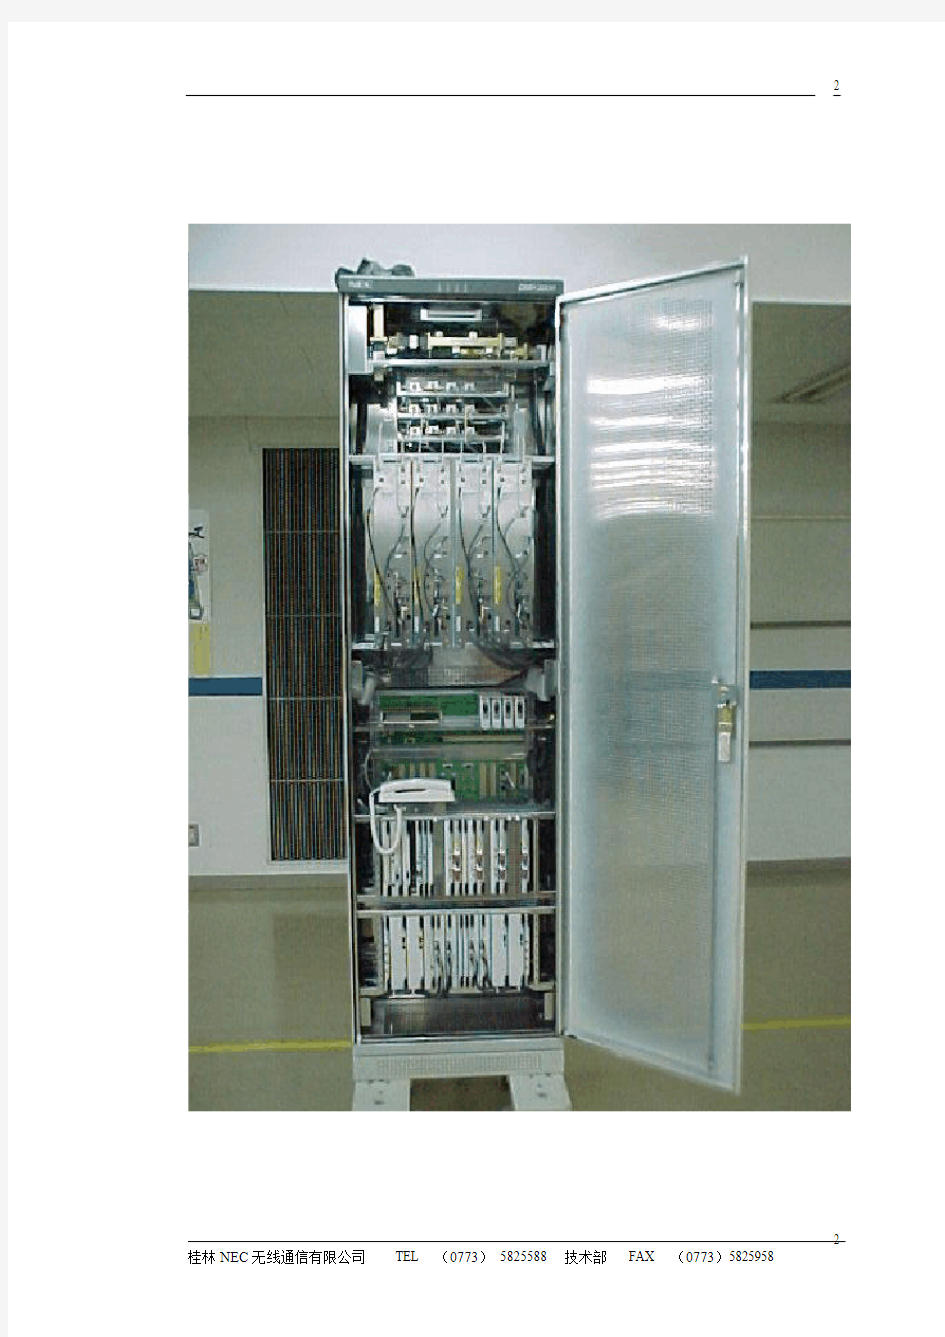 NEC 3000S 数字微波通信设备 维护手册